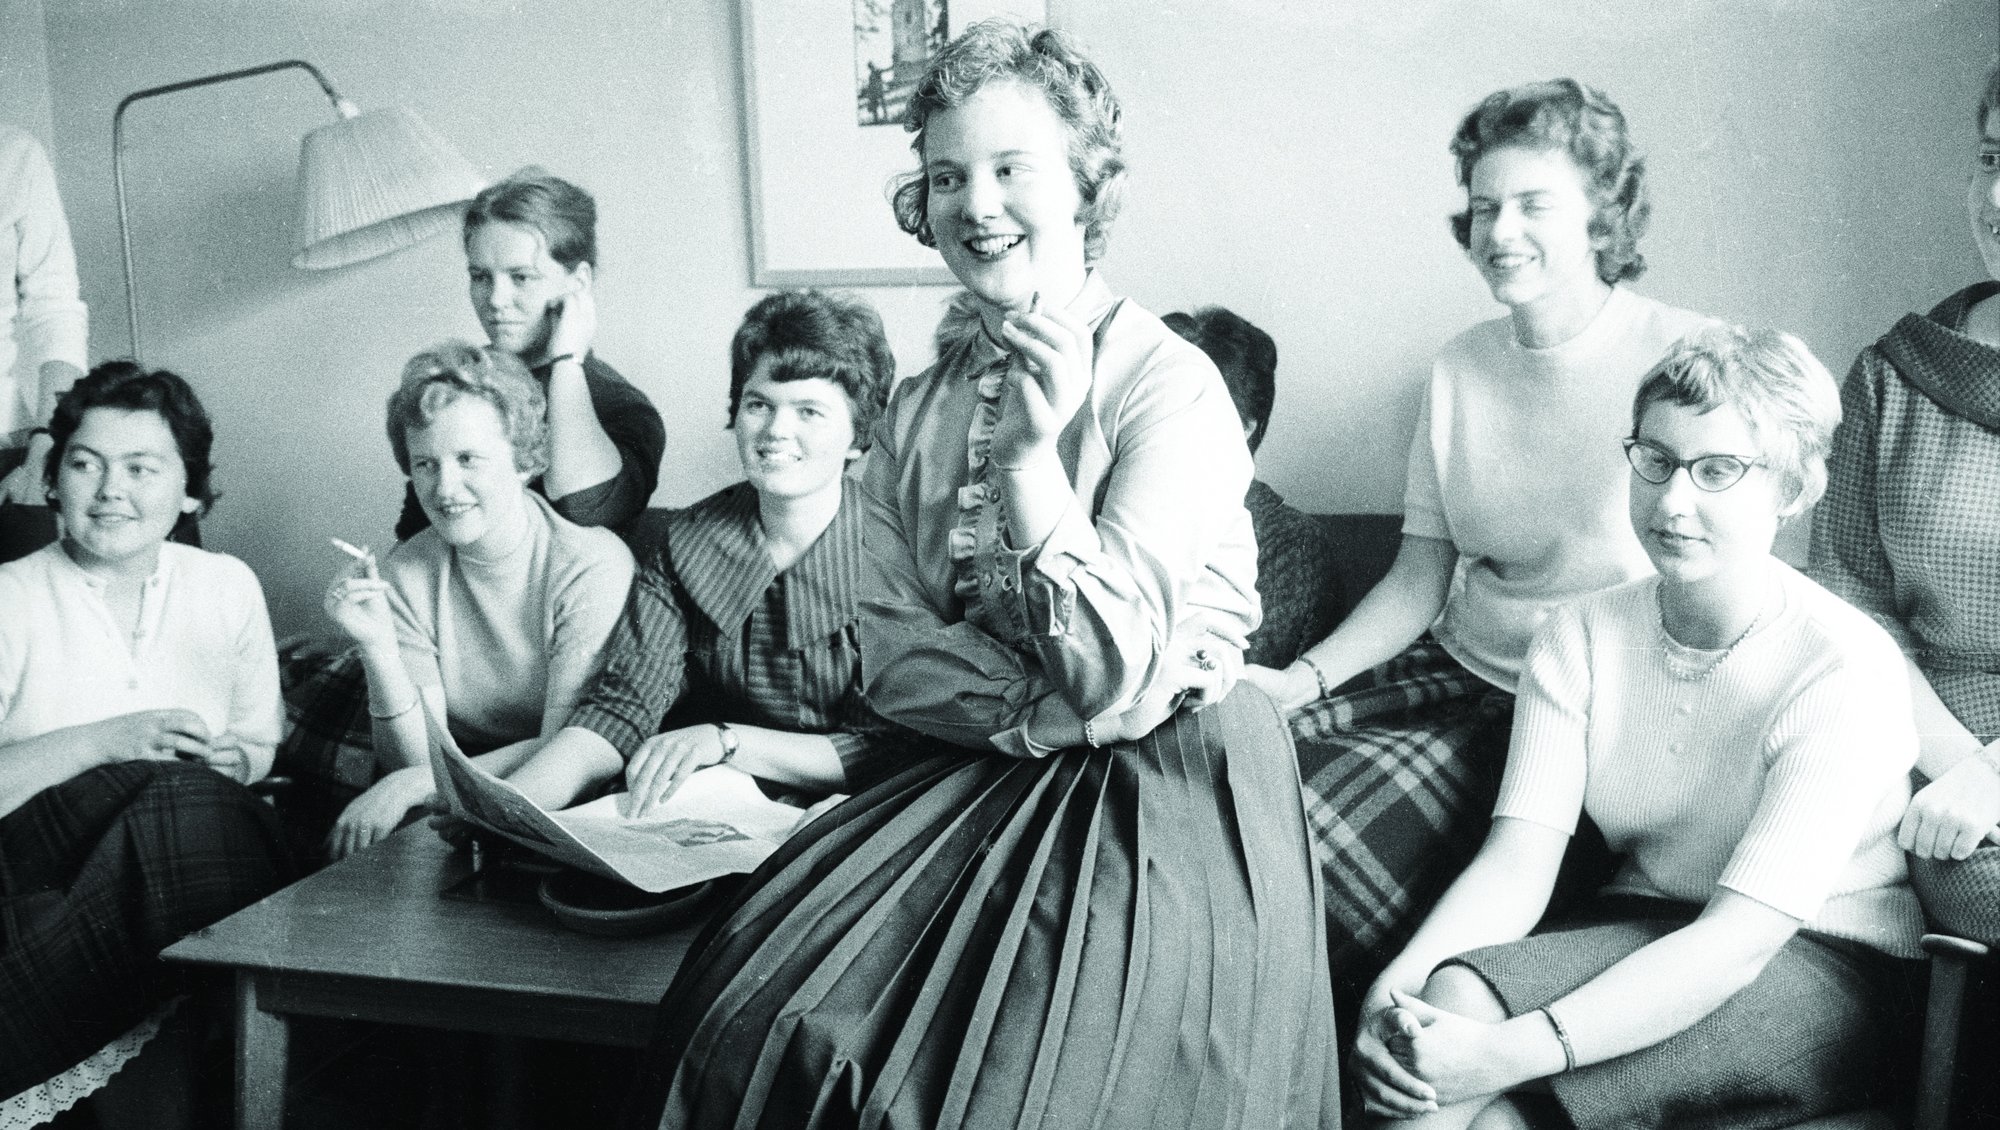 Prinsesse Margrethe sammen med en række andre studerende på kollegiet sidder samlet, formentlig i kollegiekøkkenet i 1961.